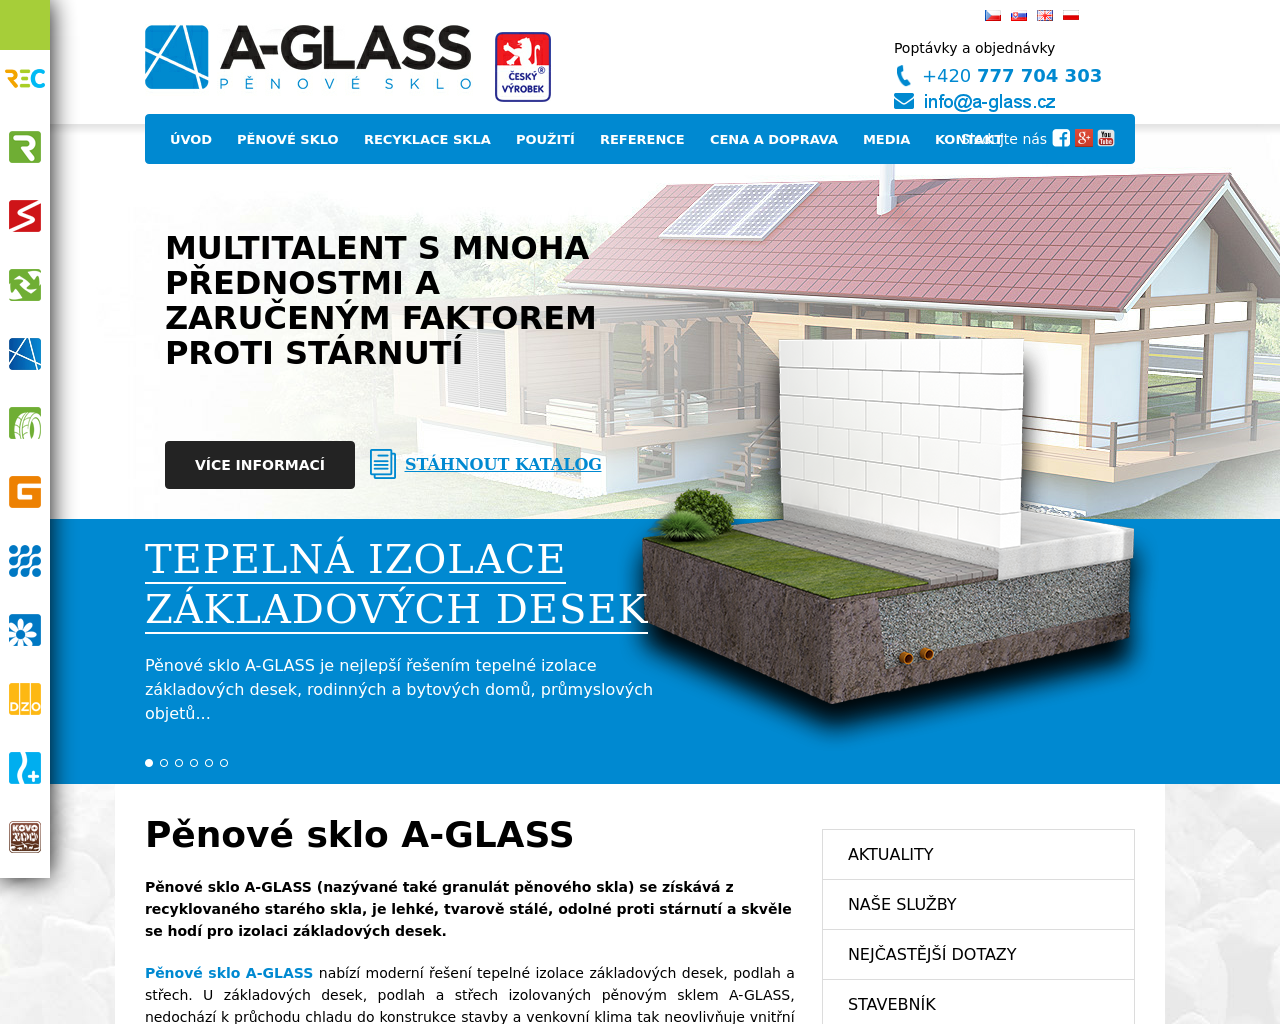 Site Image a-glass.cz v 1280x1024